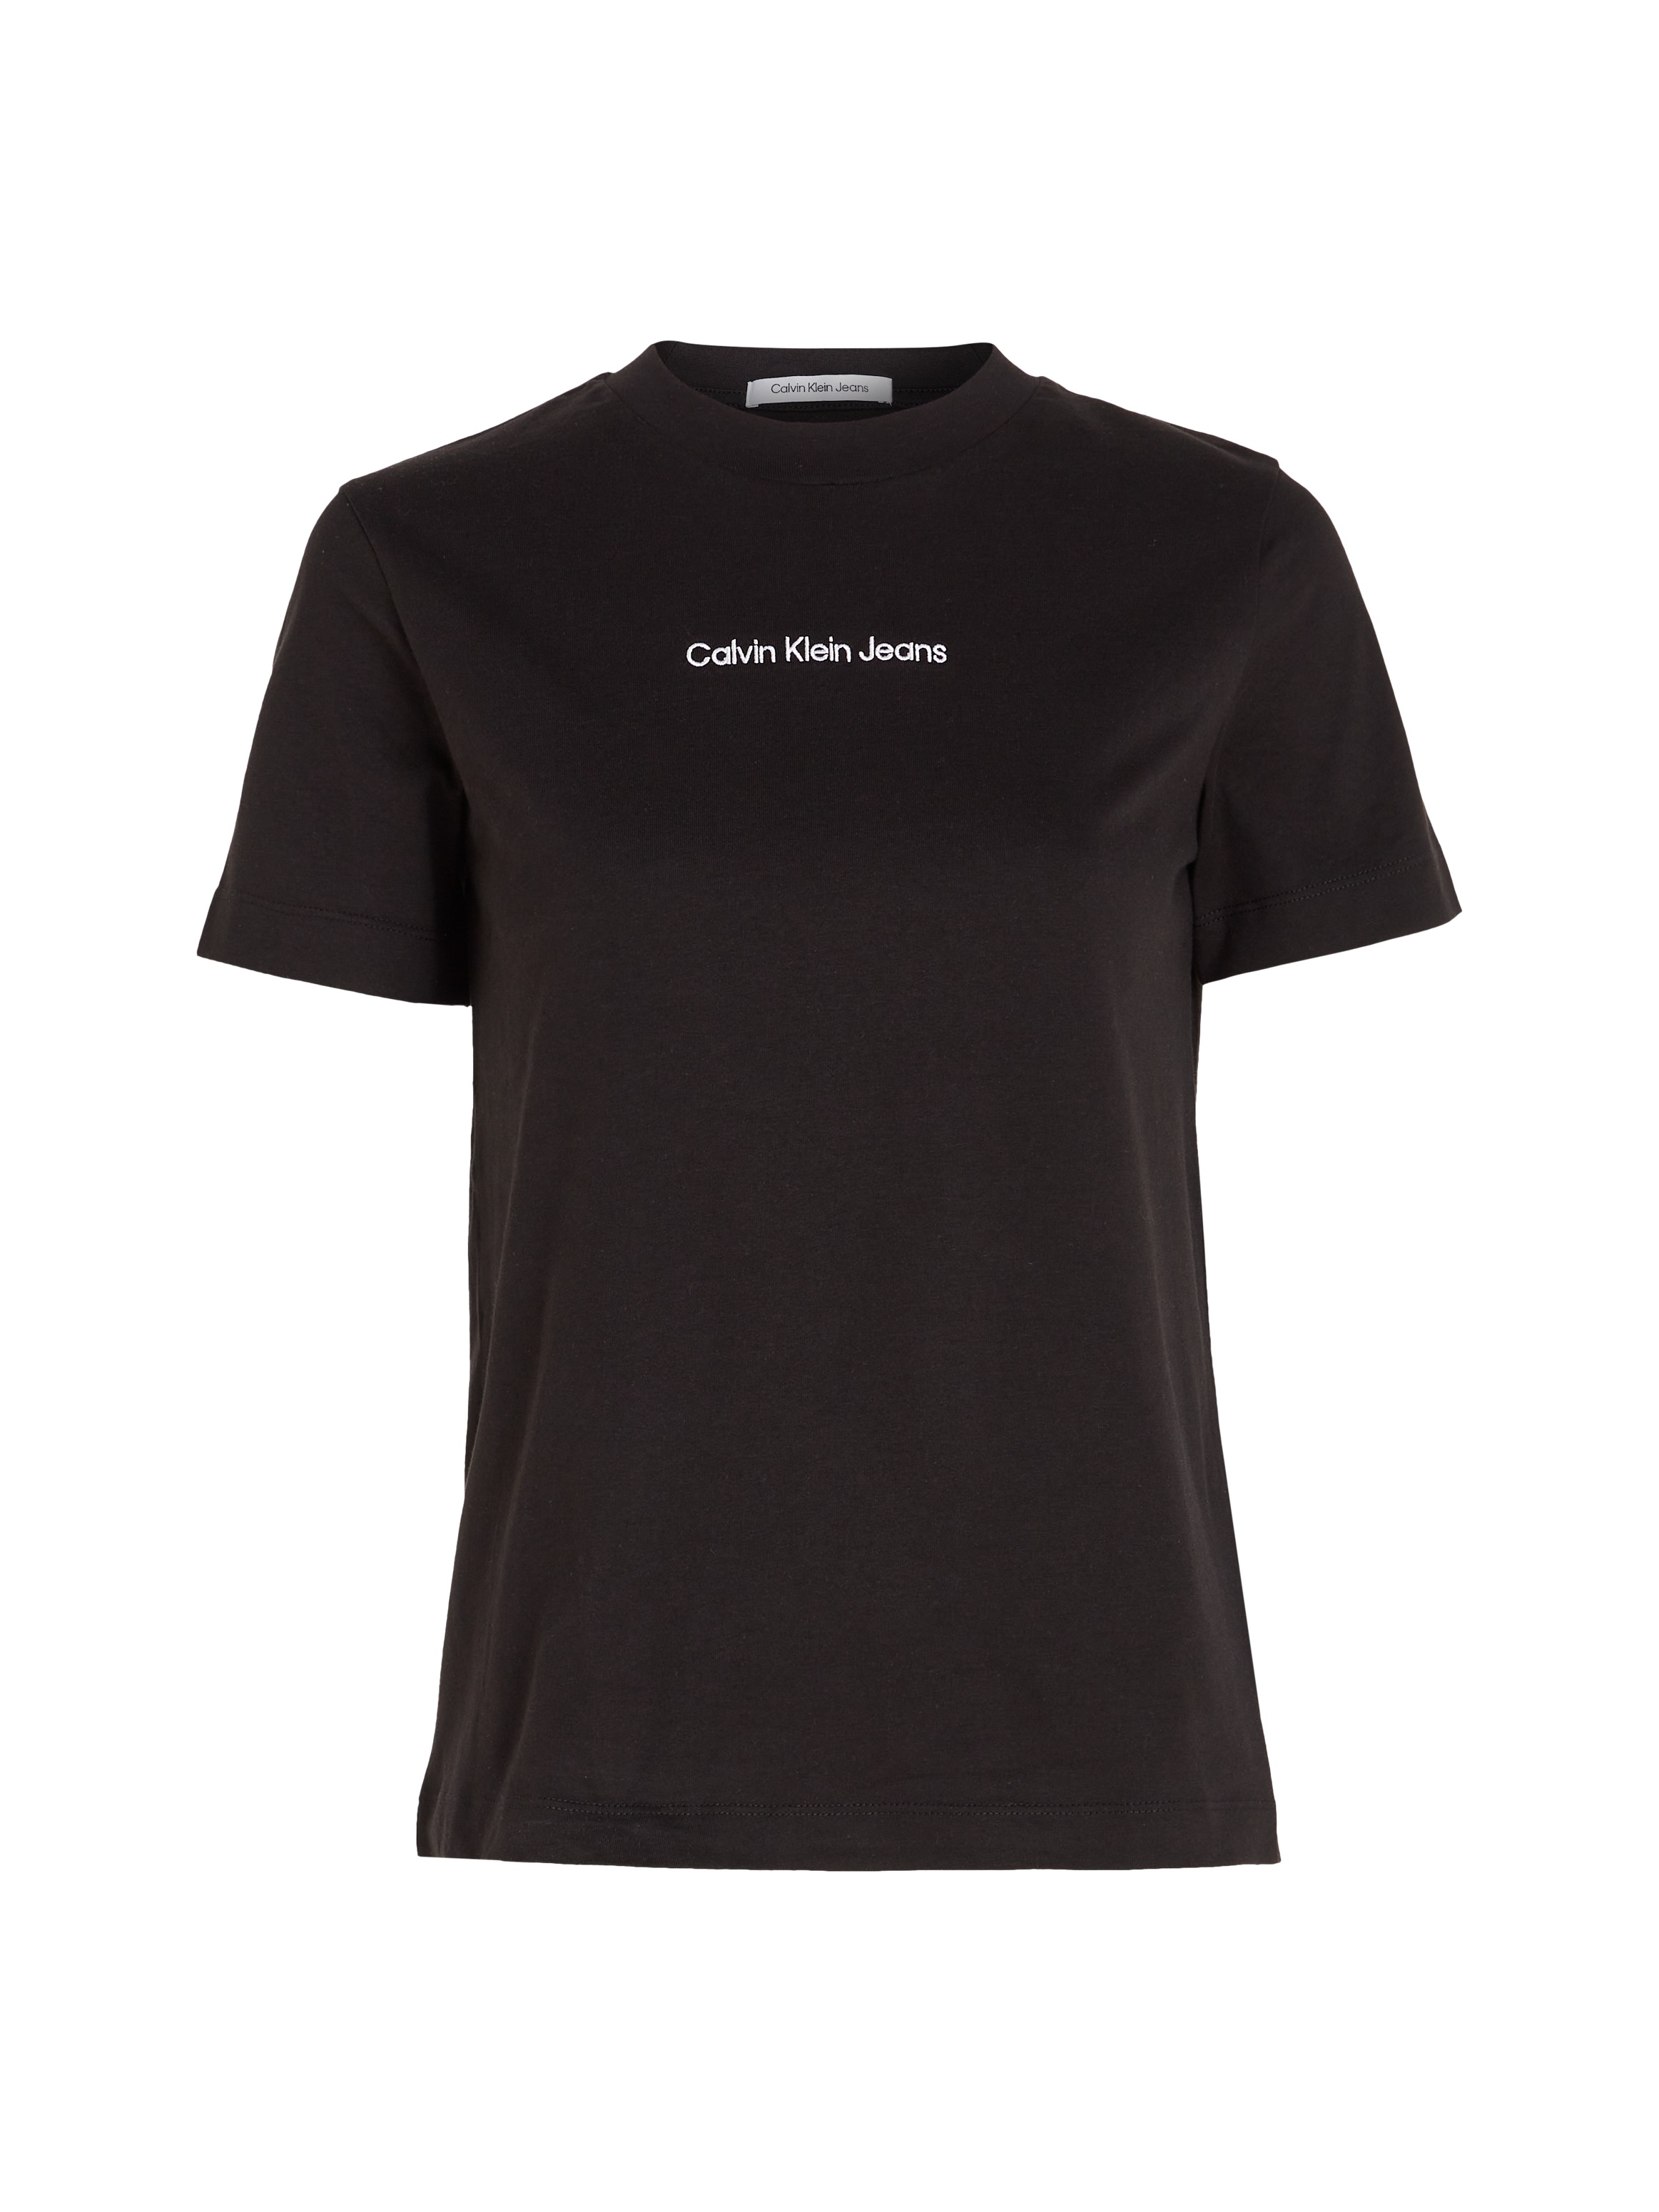 Calvin Klein Jeans TEE«, STRAIGHT Markenlabel OTTO mit Shop im »INSTITUTIONAL Online T-Shirt